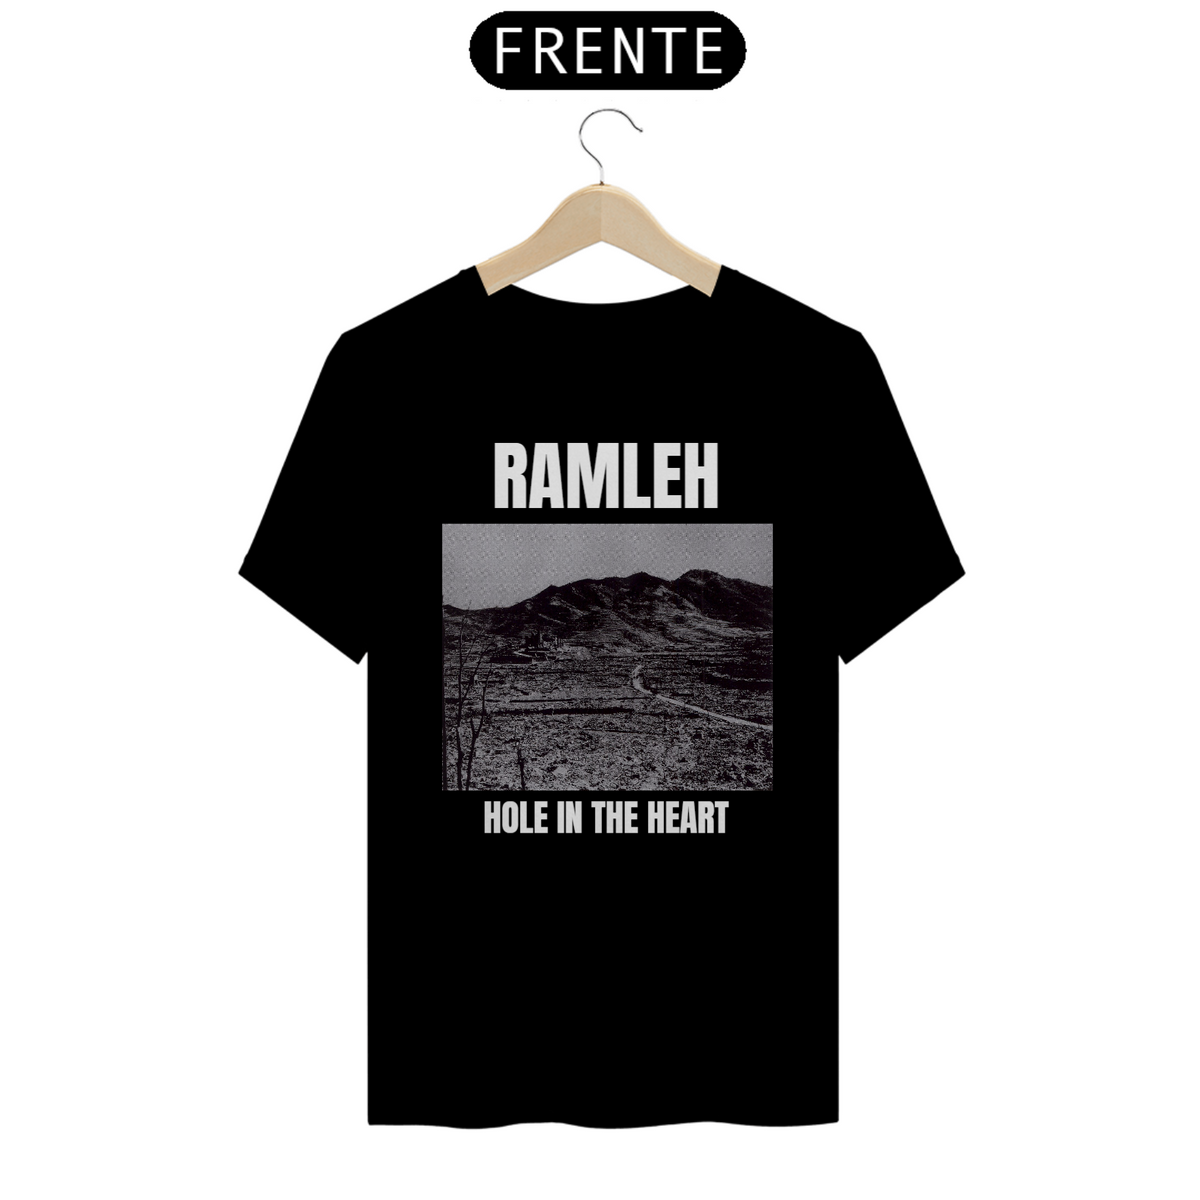 Nome do produto: Ramleh